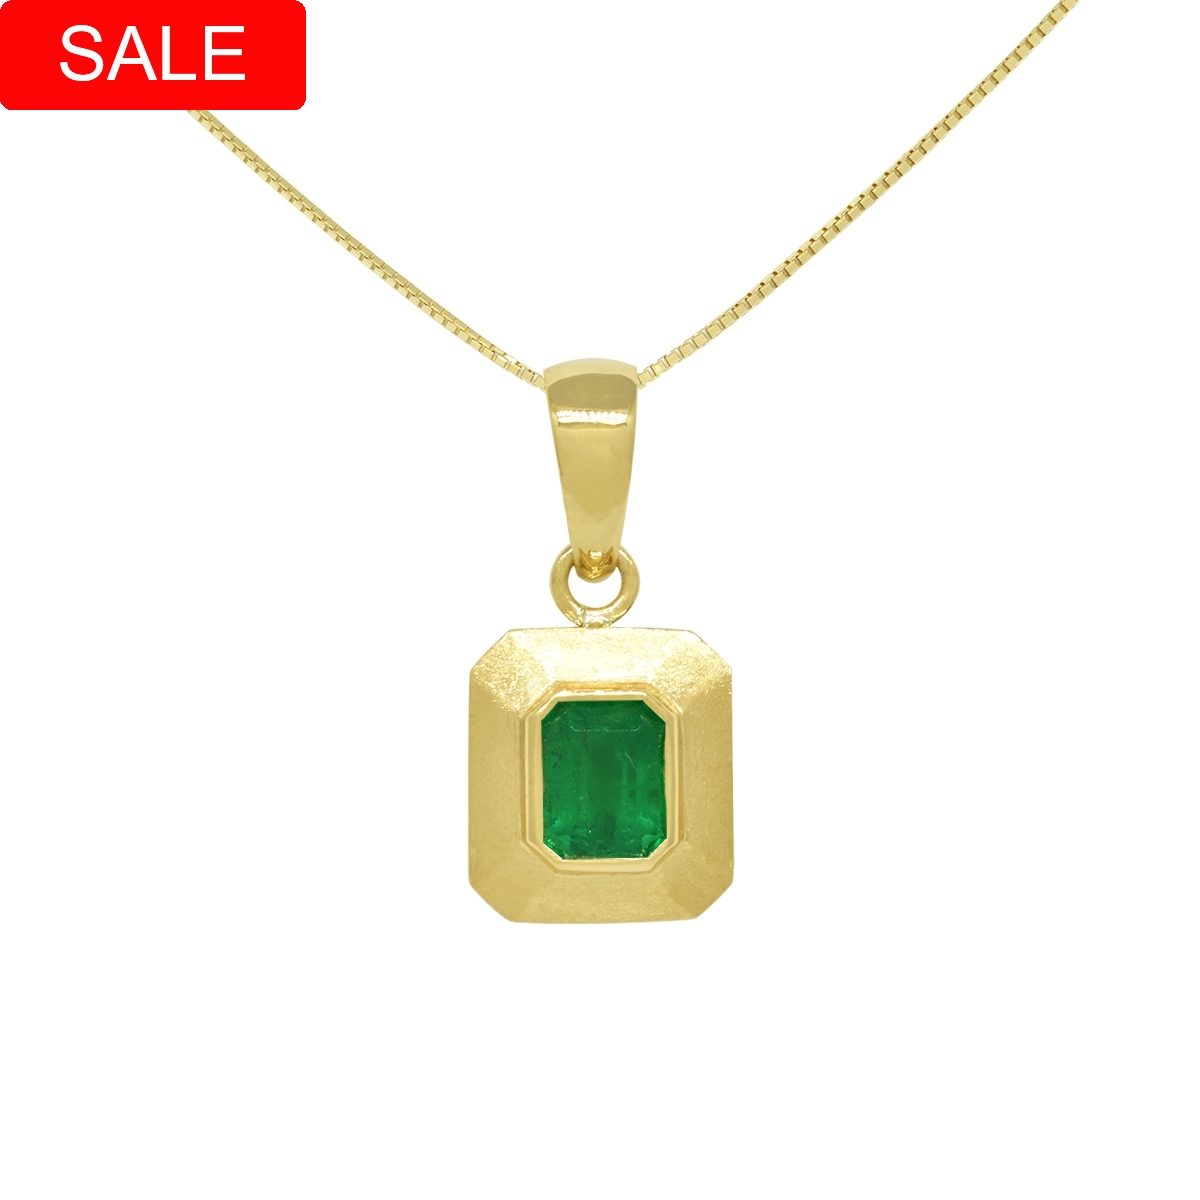 Solid 18K Gold Bezel Setting Emerald Pendant with Brushed Finish 